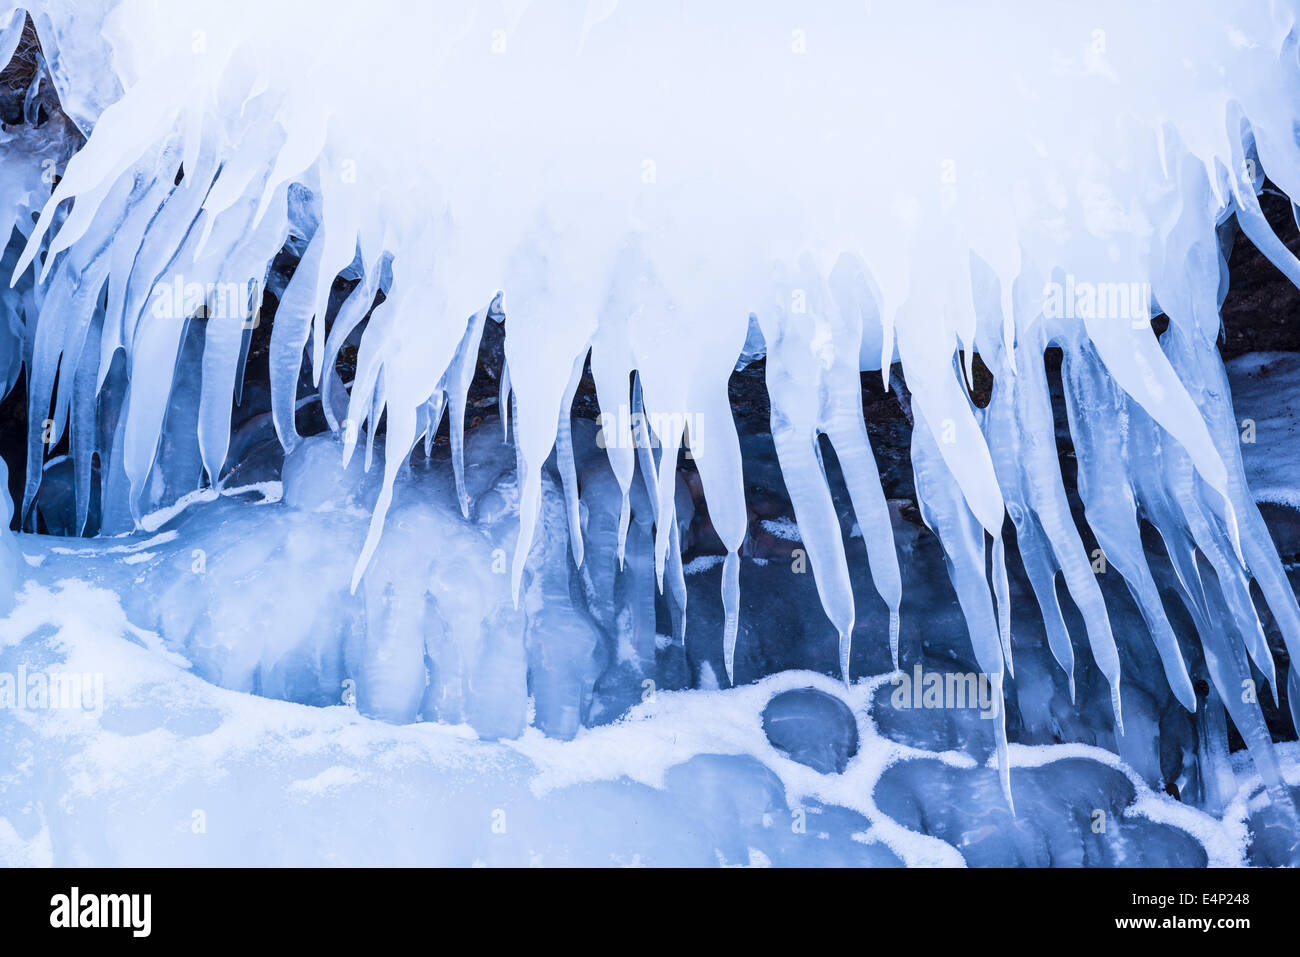 Am See Tornetraesk Eisstrukturen, Norrbotten, Laponia, Schweden Foto de stock